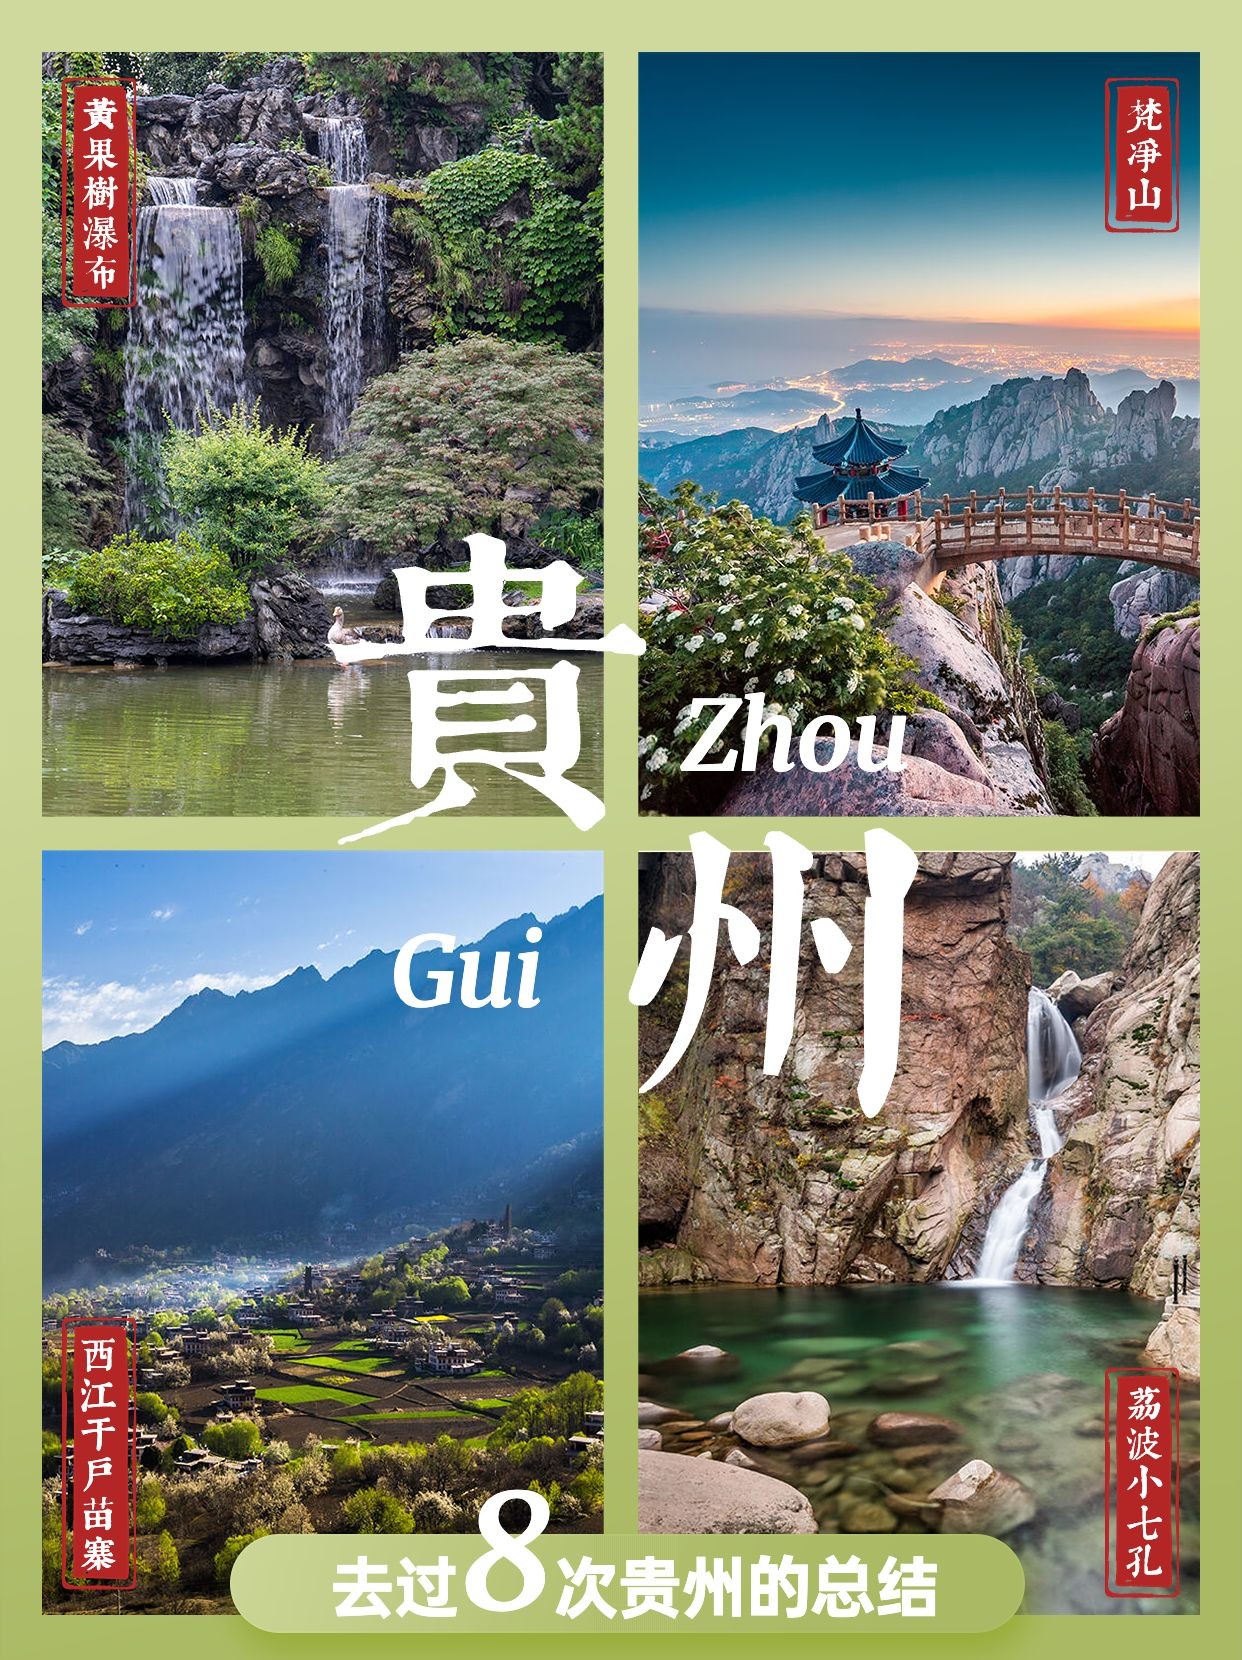 旅游出行贵州景点推荐小红书配图预览效果